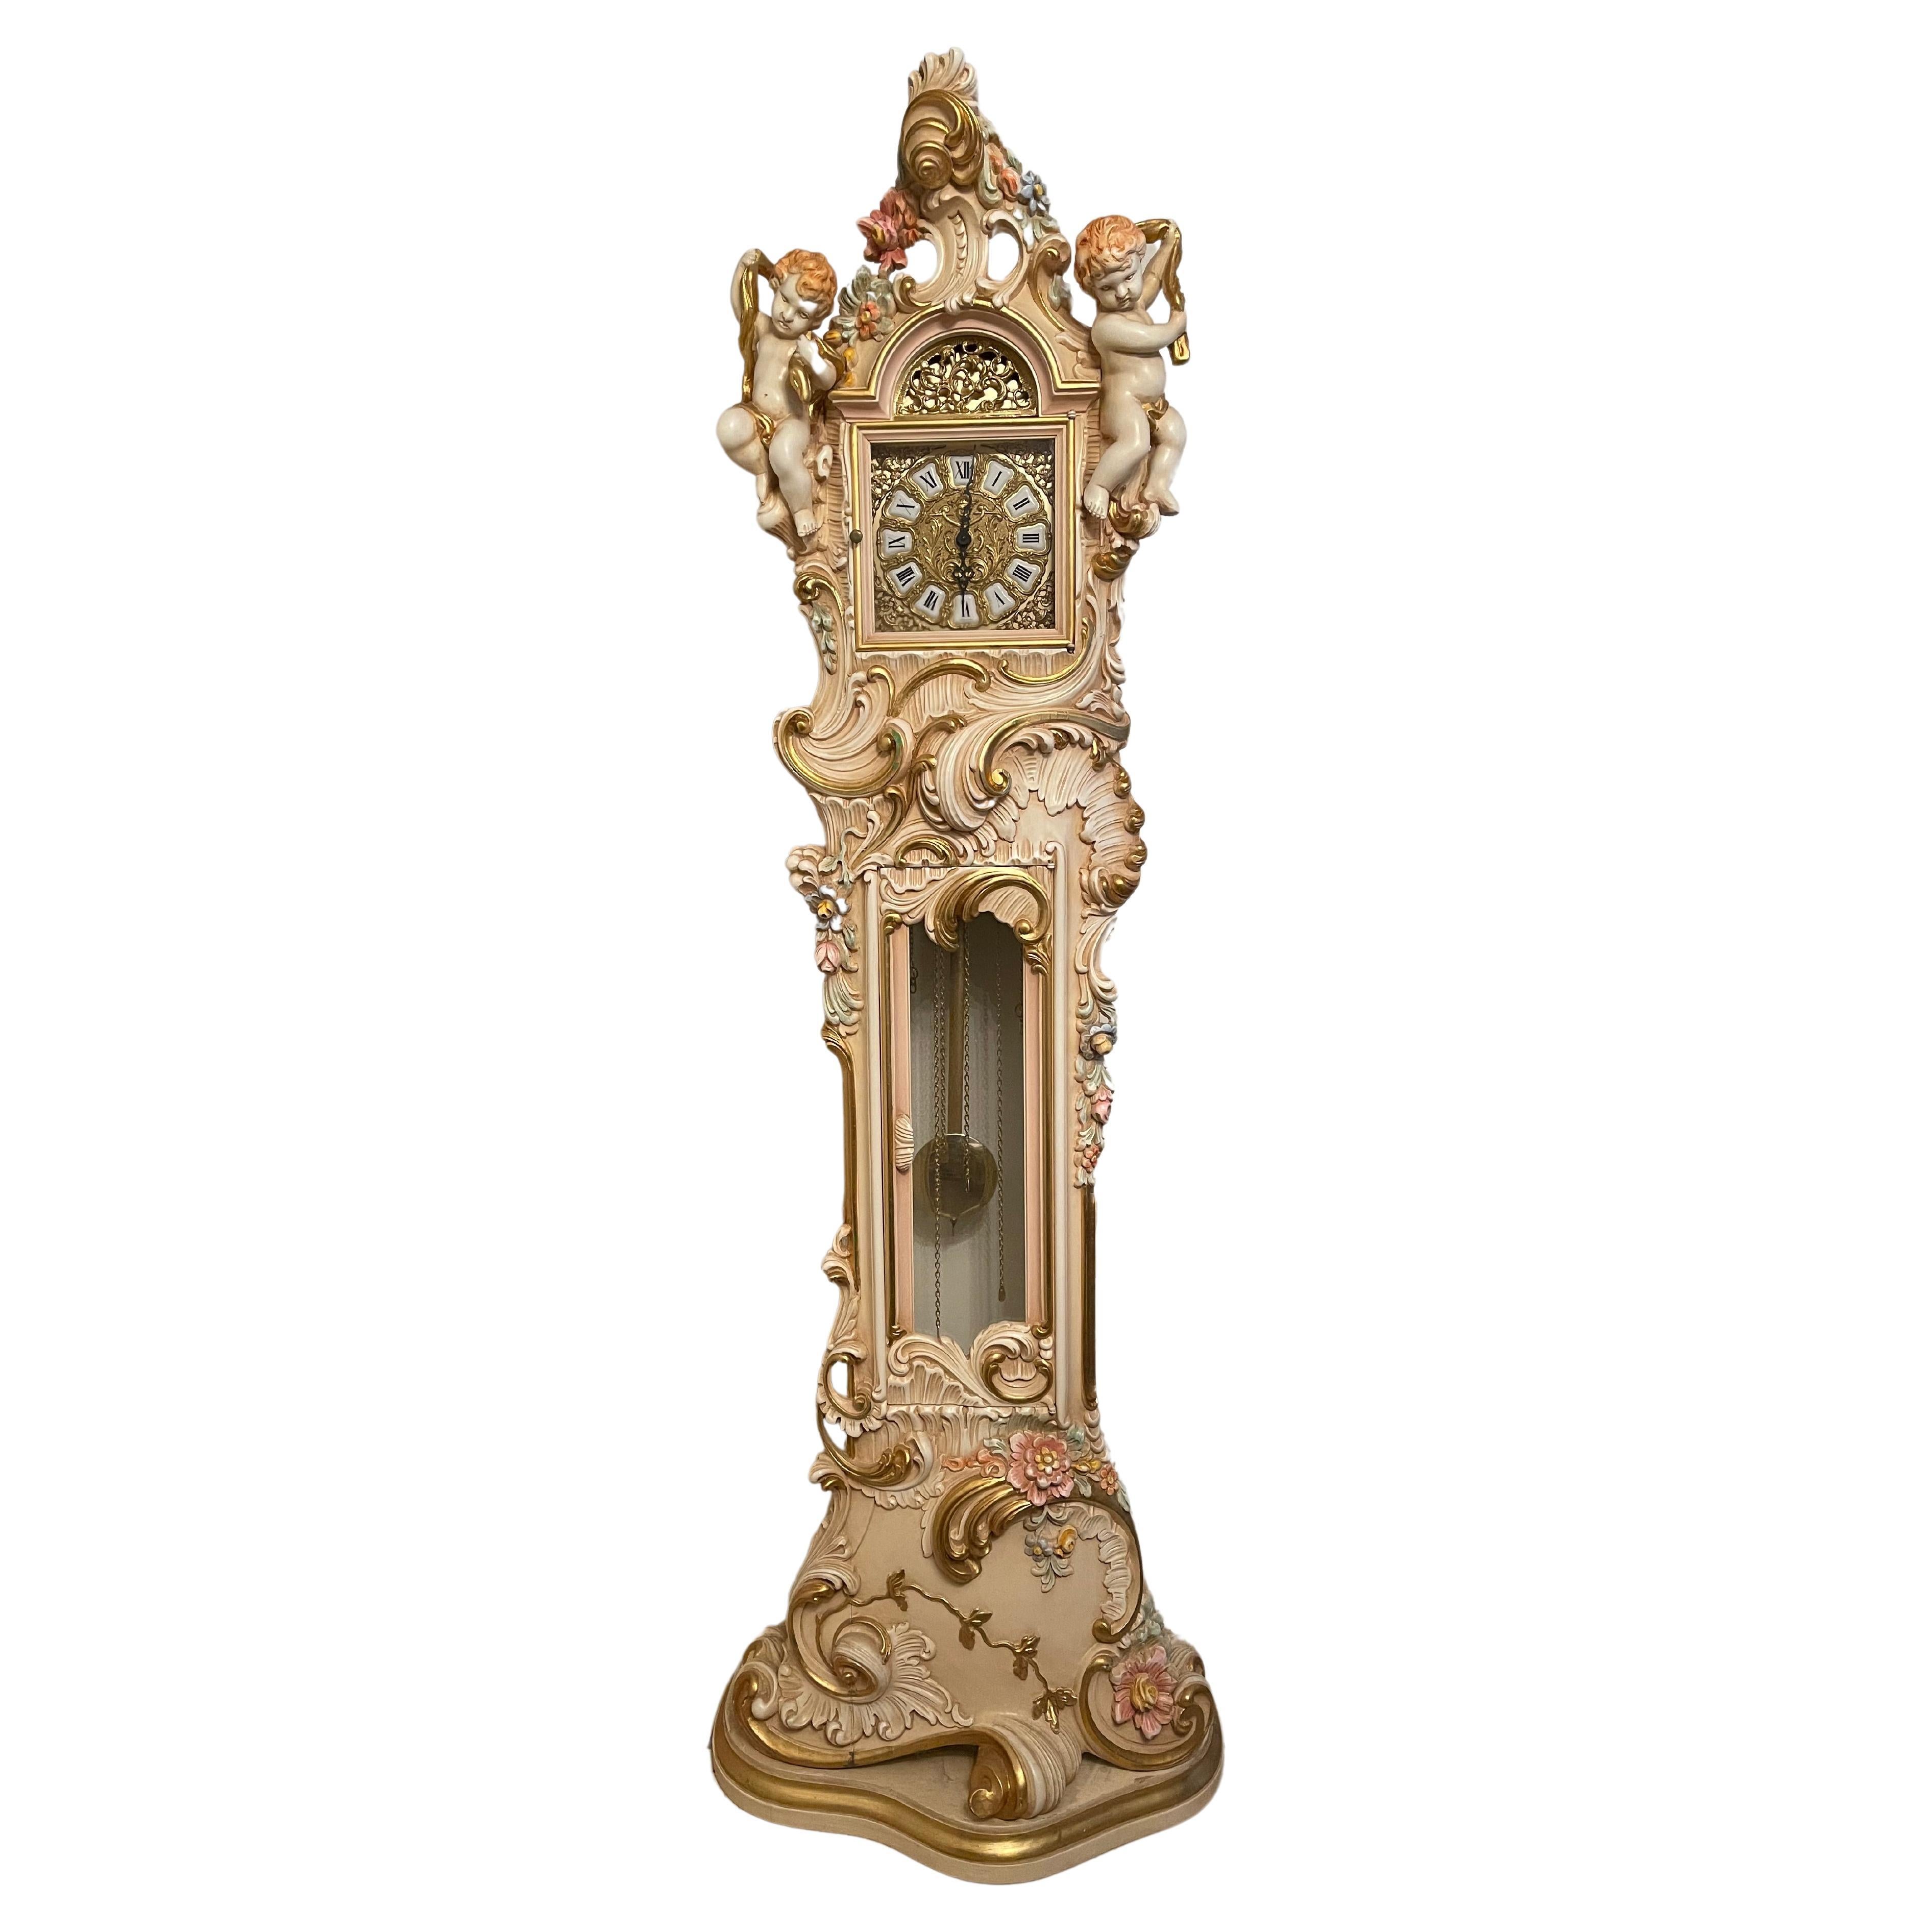  Orologio a Pendolo in Legno Laccato Stil barocco veneziano 700